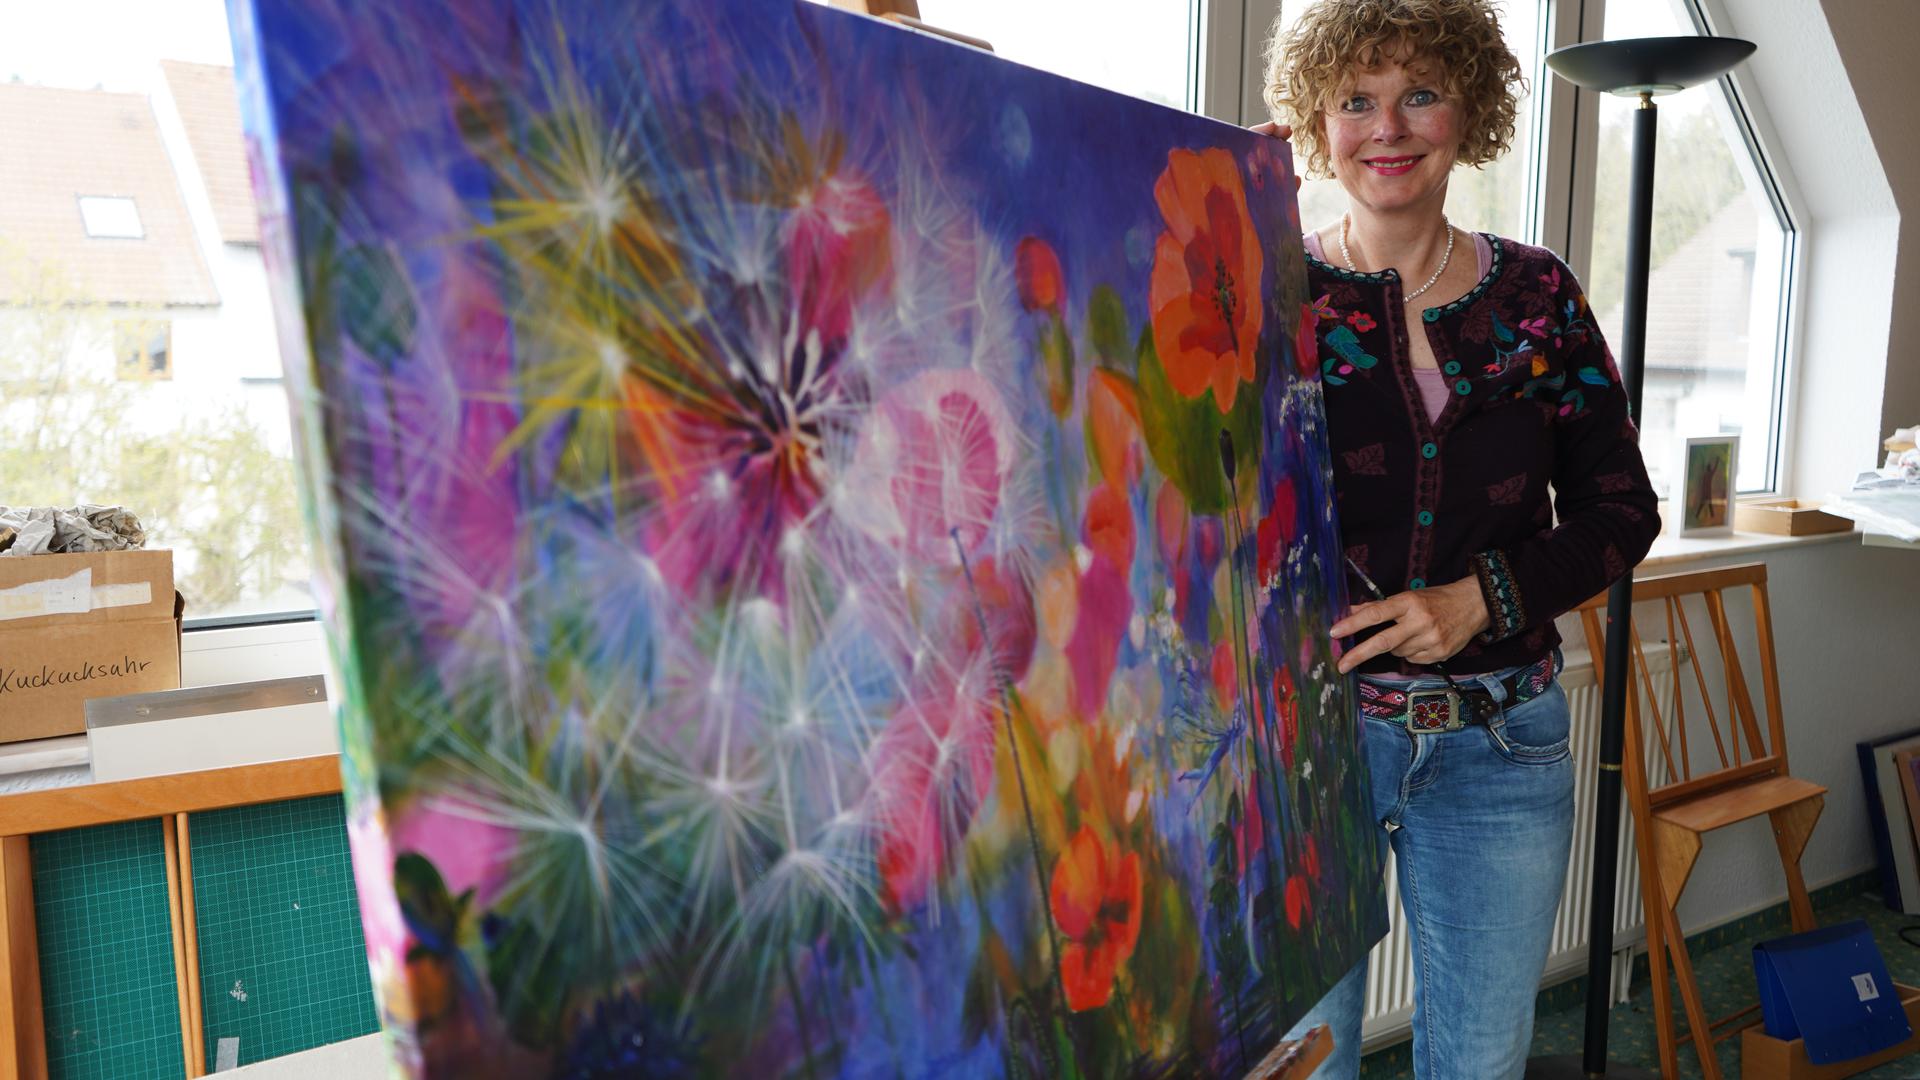 Blütenmeer auf der Staffelei: Ann-Kathrin Busse hat das Bild bereits im September 2020 gemalt. Sie möchte mit ihren Bildern einen Gegenpol zum Coronavirus setzen. 